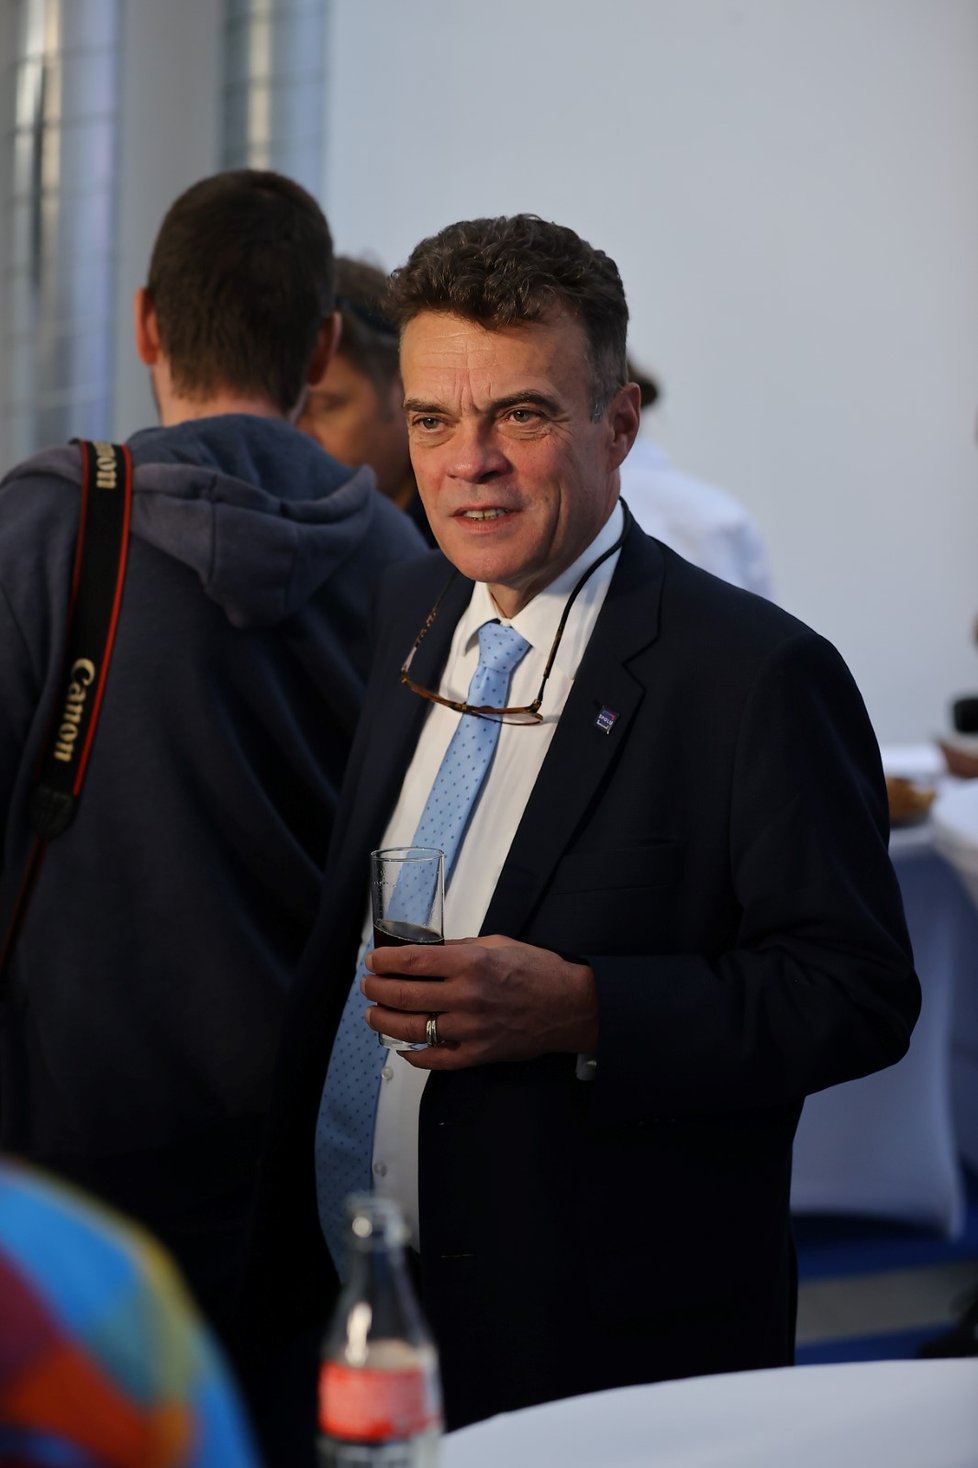 Senátor Tomáš Czernin, který obhajuje mandát, ve štábu Spolu